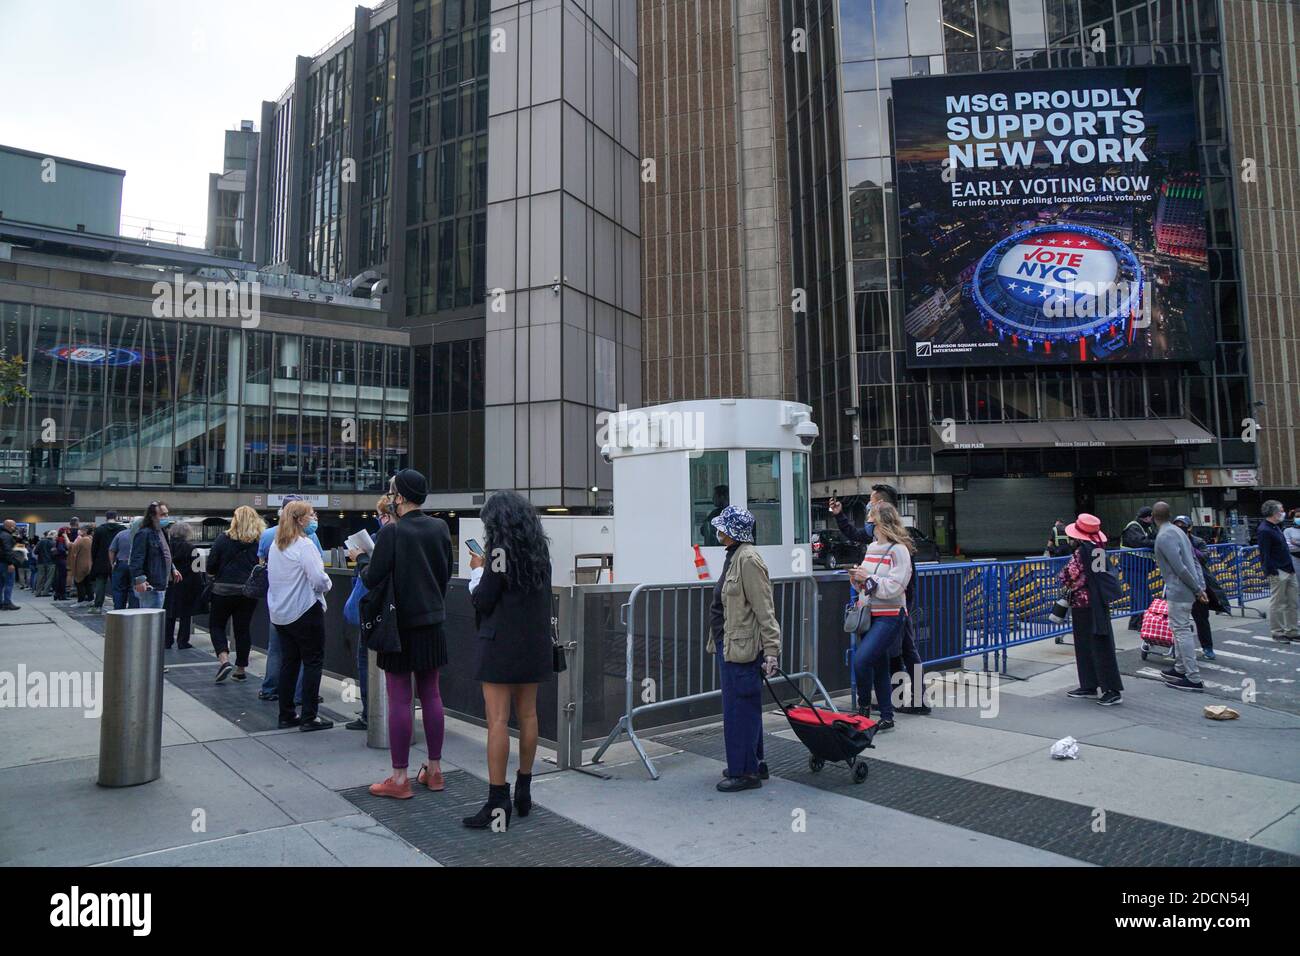 NEW YORK - 24. Oktober 2020: Die Leute warten am Madison Square Garden auf den ersten Tag der frühen Abstimmung Stockfoto